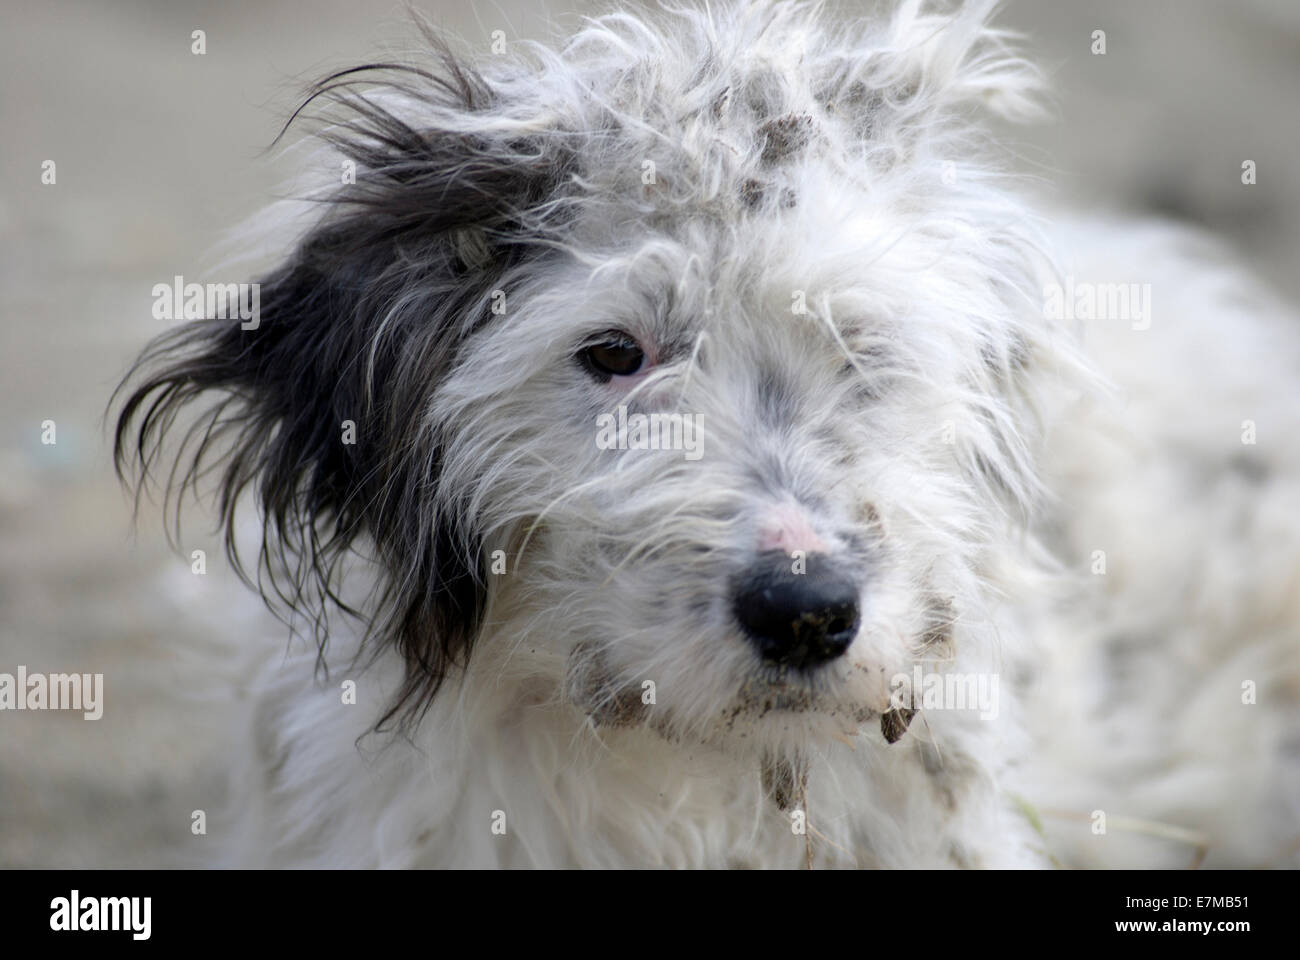 Portrait d'un chien errant avec fourrure emmêlée Banque D'Images